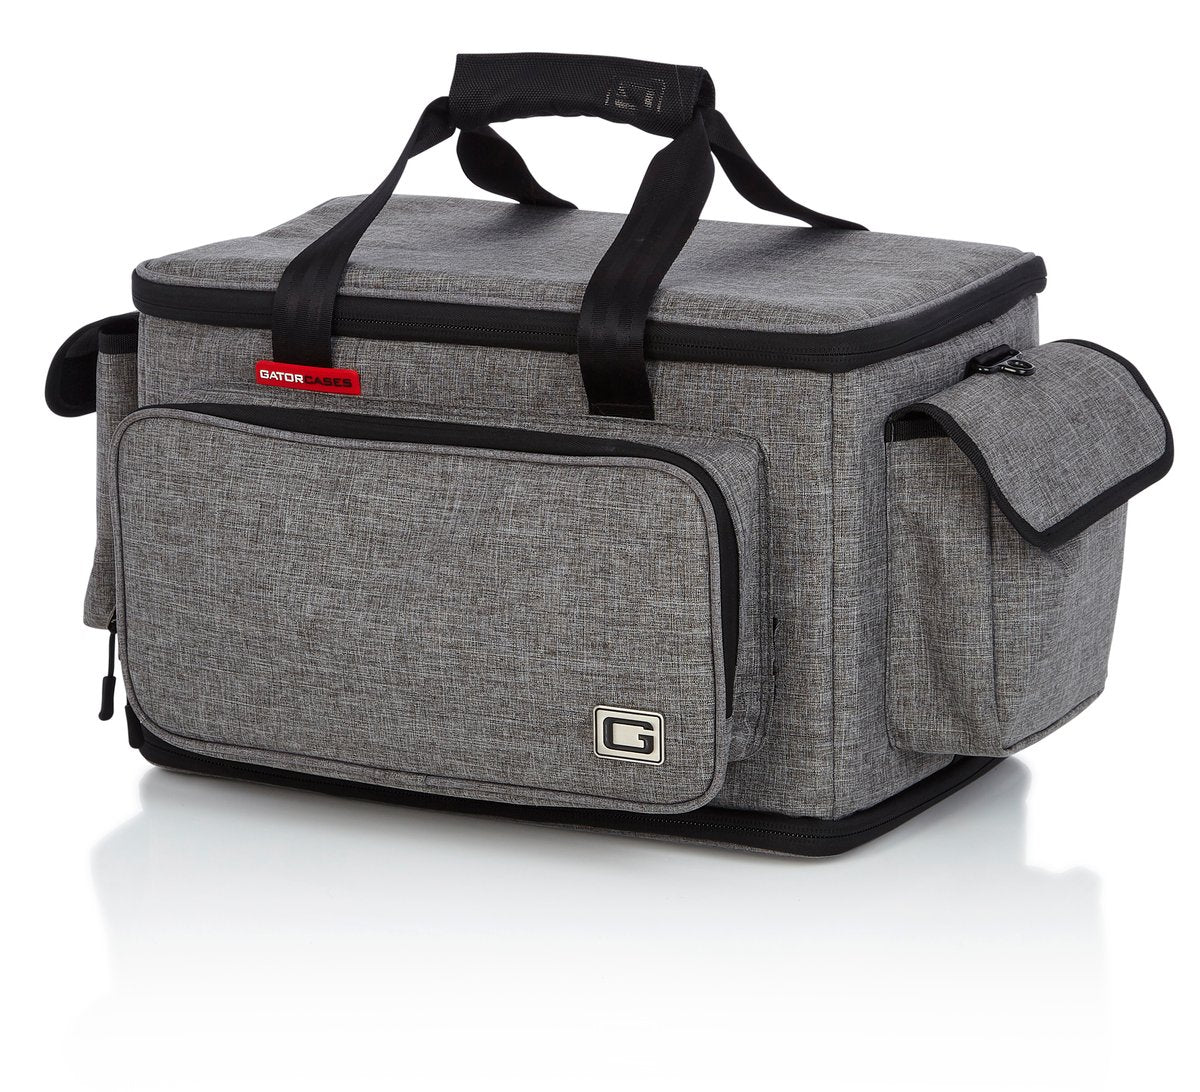 Transit Style Bag For Kemper Profiler Amps